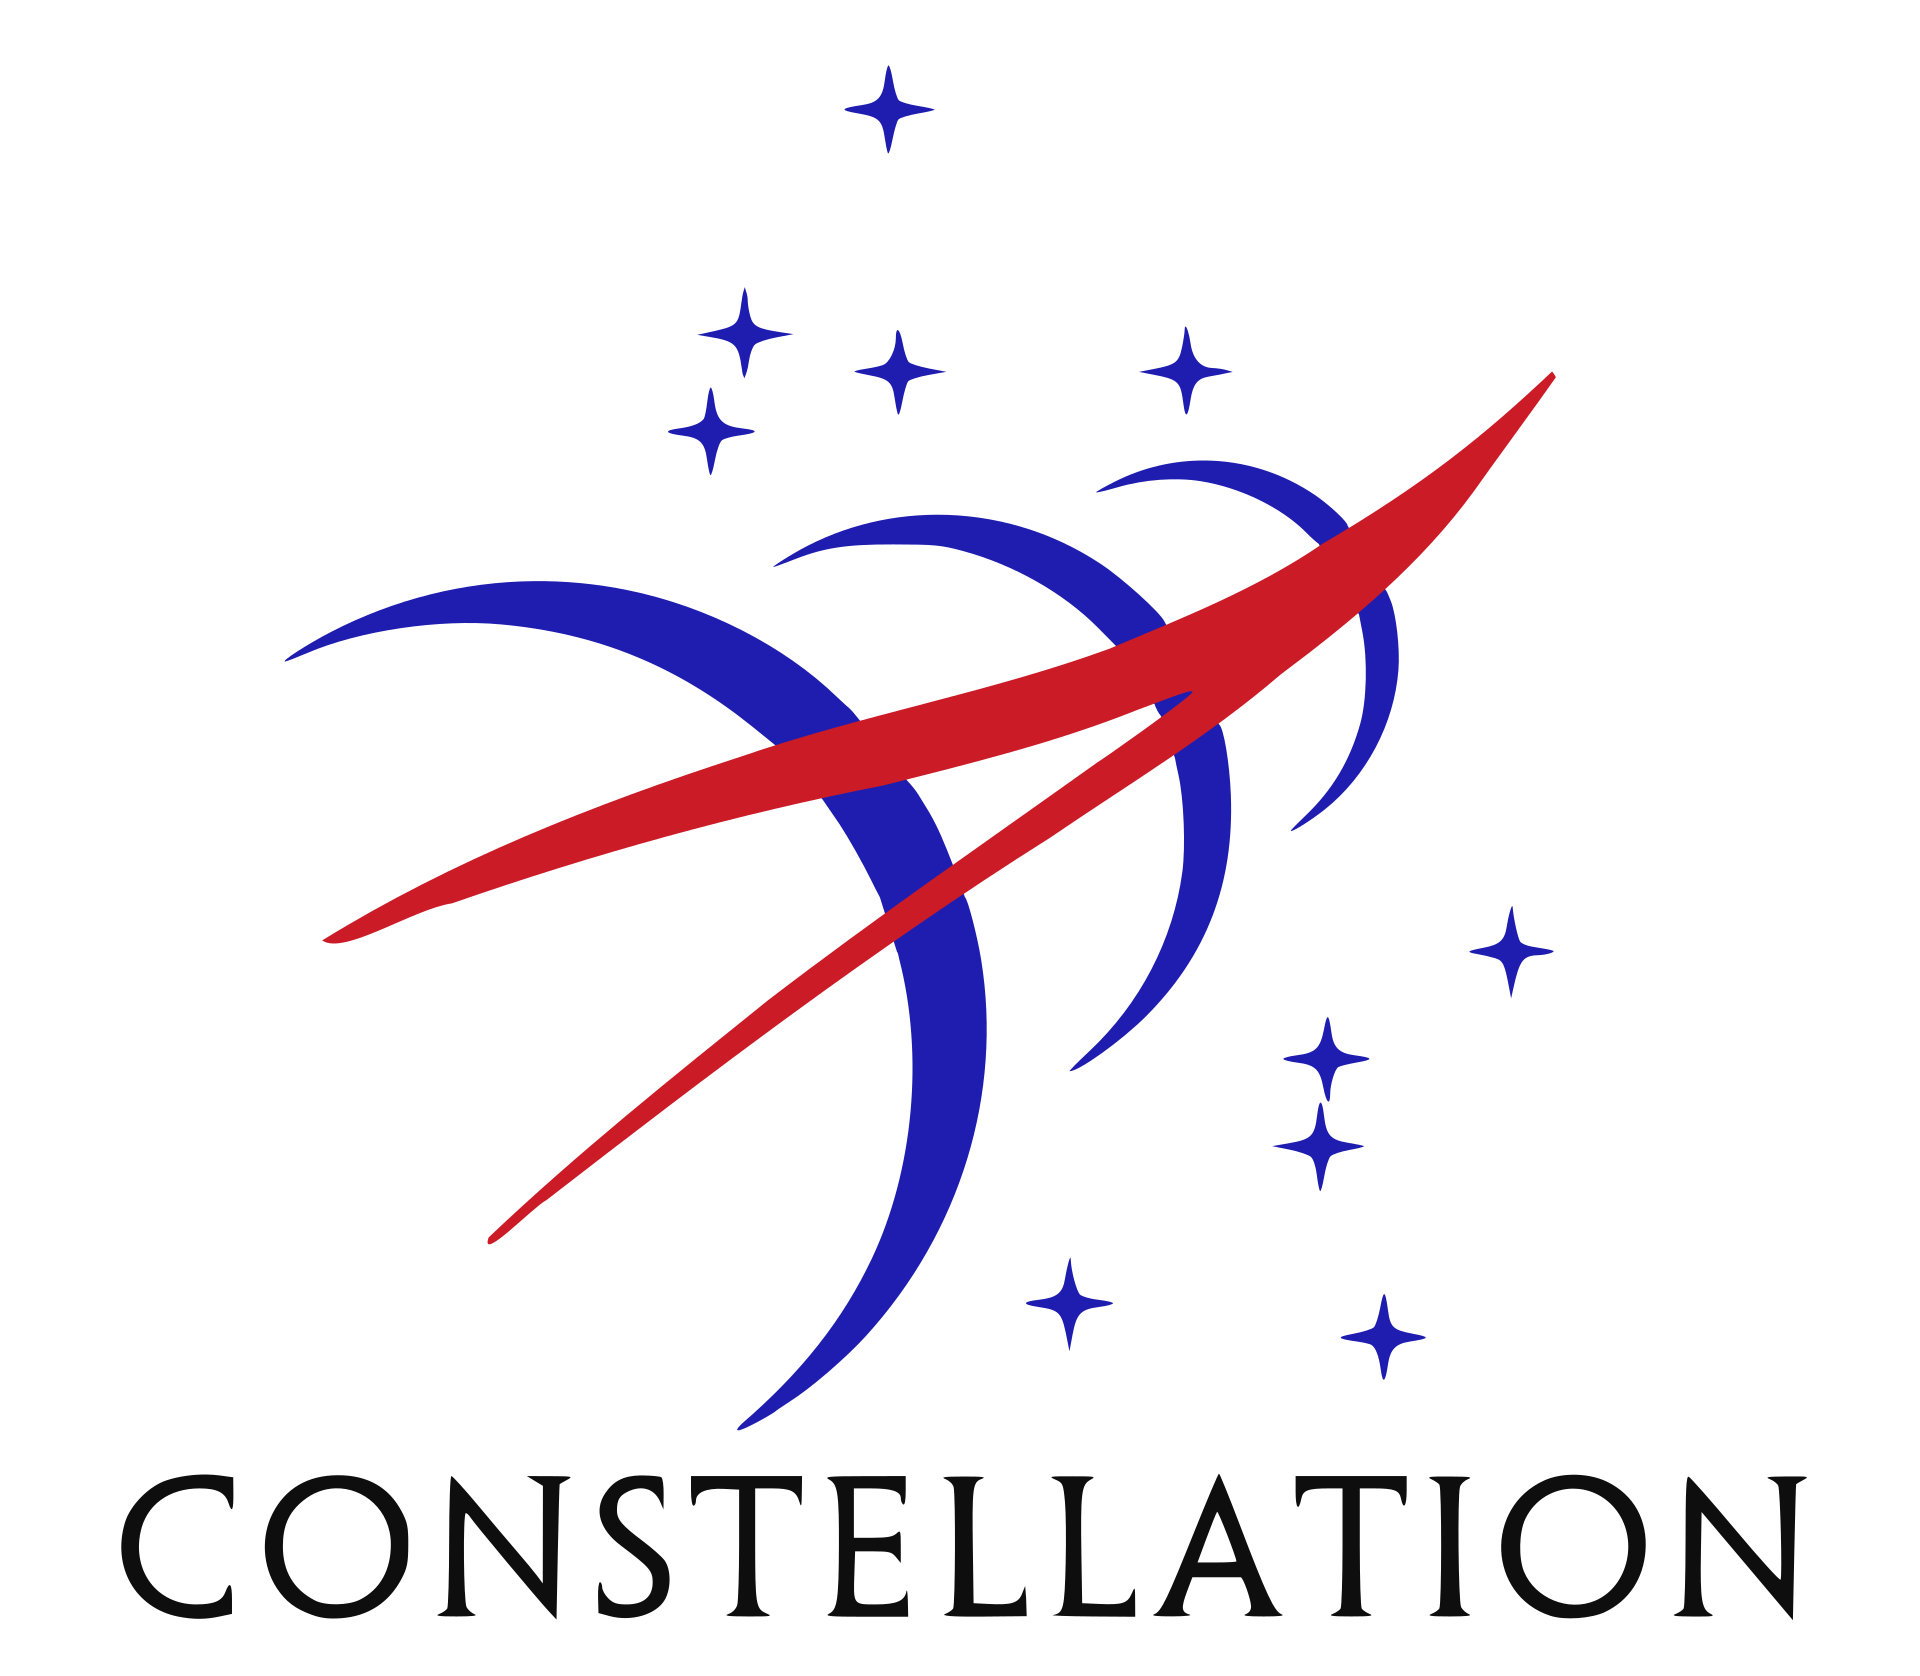 NASA Constellation - NASA CxP - Космическая программа развития пилотируемой космонавтики в США 2004 по 2010 годы